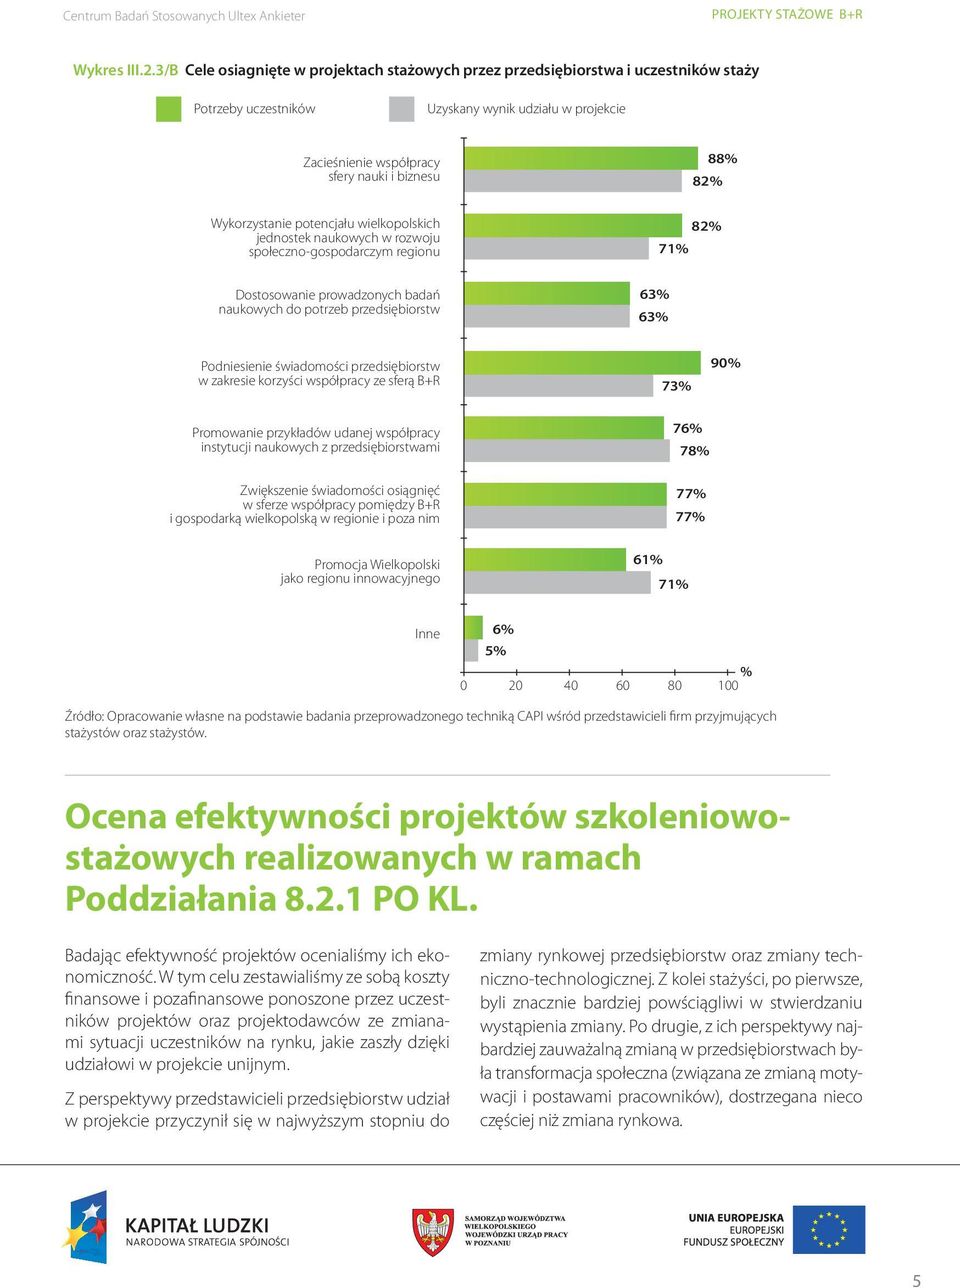 Wykorzystanie potencjału wielkopolskich jednostek naukowych w rozwoju społeczno-gospodarczym regionu 71% 82% Dostosowanie prowadzonych badań naukowych do potrzeb przedsiębiorstw 63% 63% Podniesienie